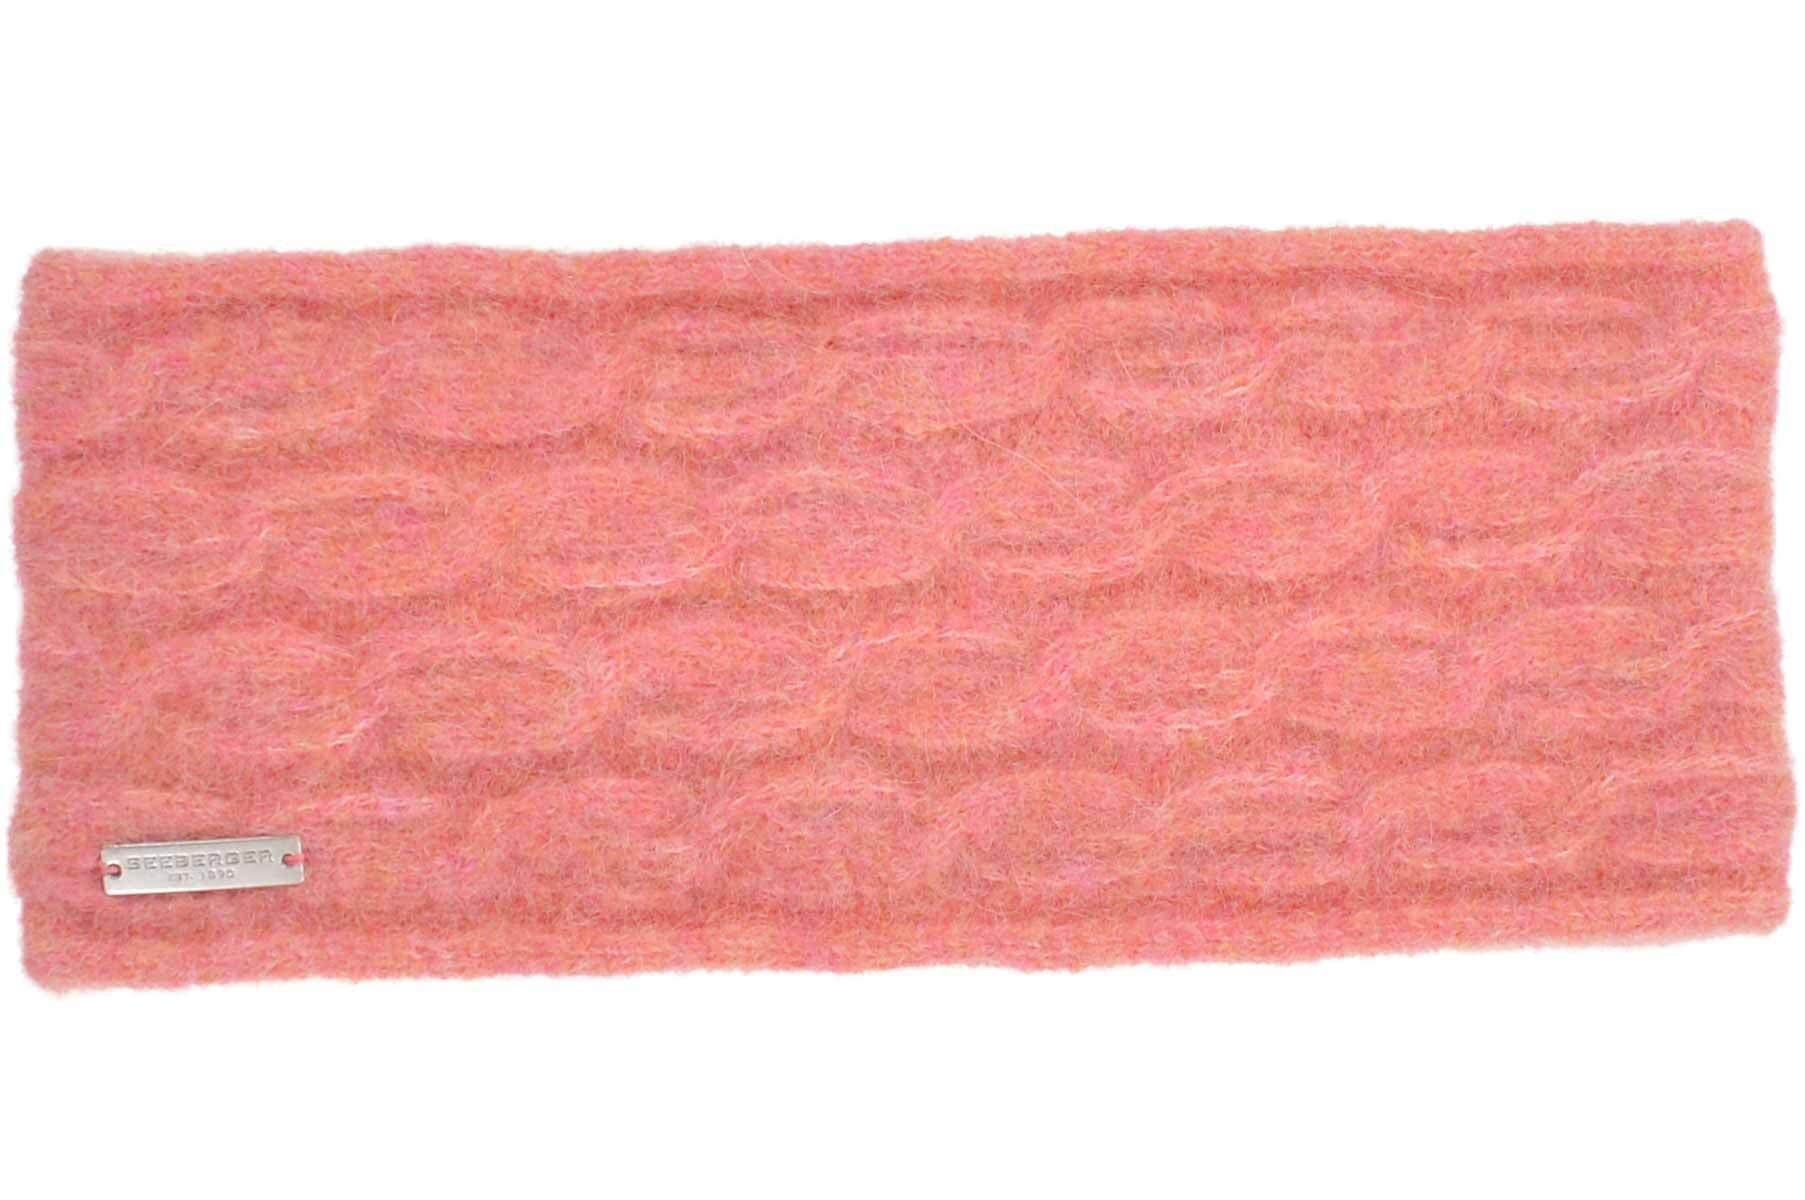 Seeberger Stirnband Strick Alpakamix Stirnband 19106-0 in Zopfmuster sandel